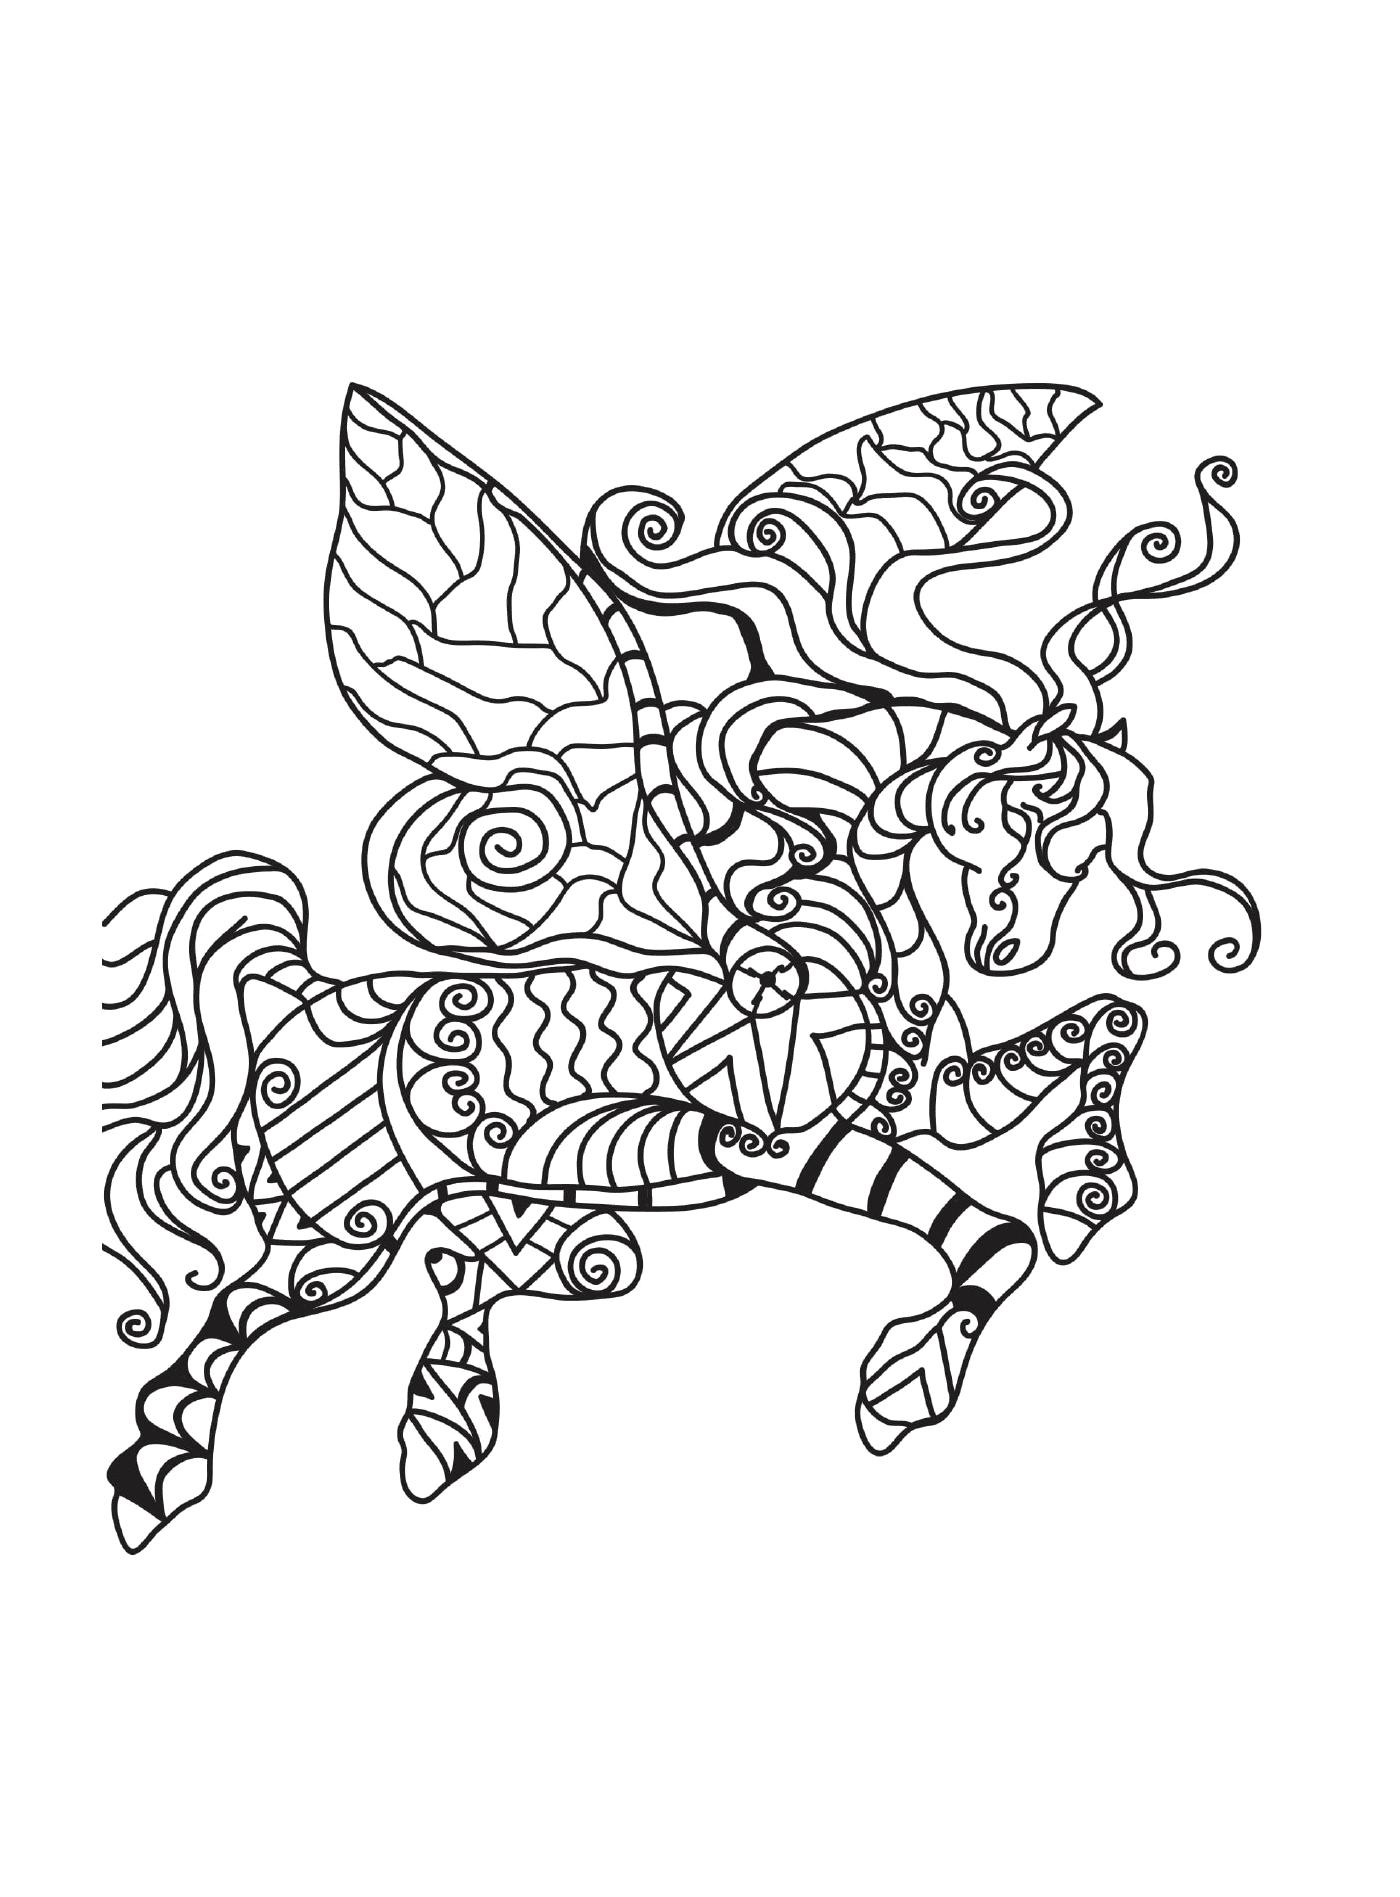  Un cavallo con ali di farfalla 